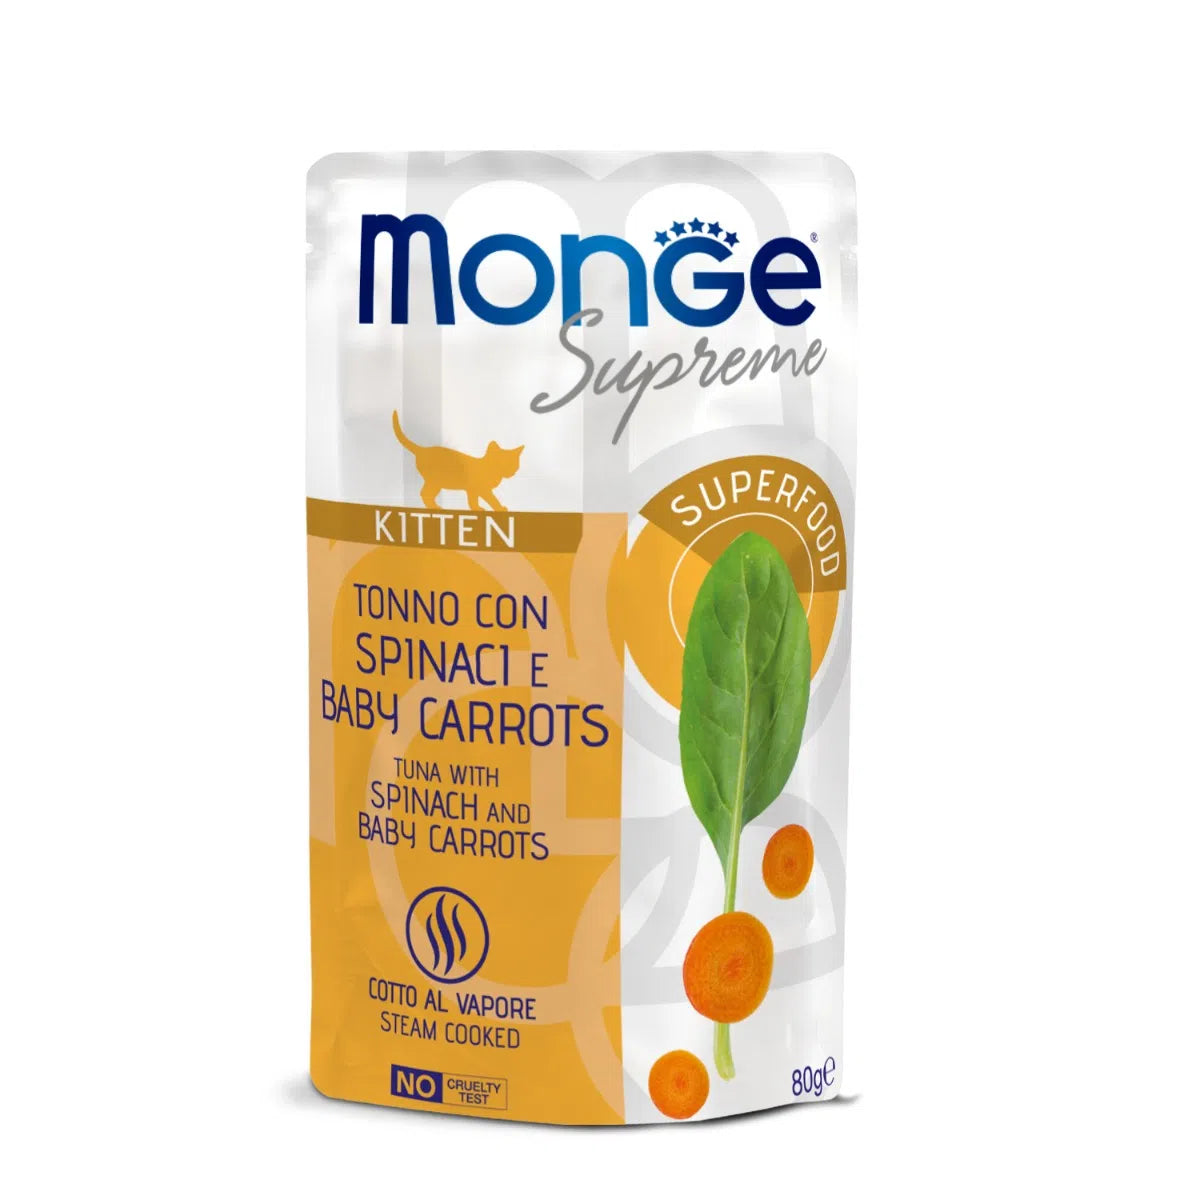 Monge supreme - tonno con spinaci e baby carrots